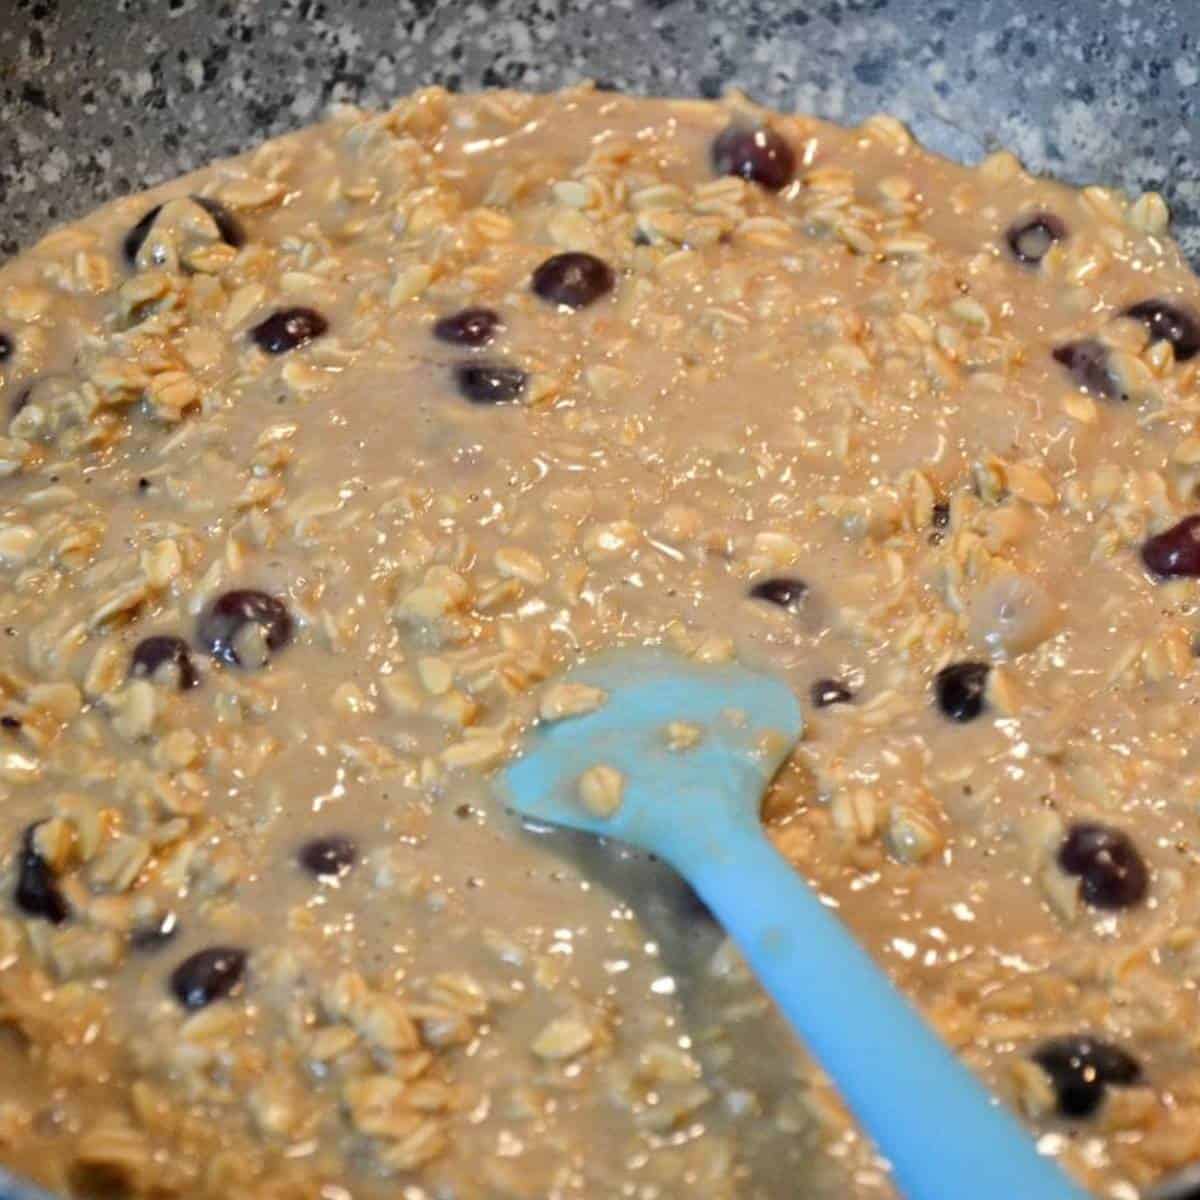 one step in making oatmeal.